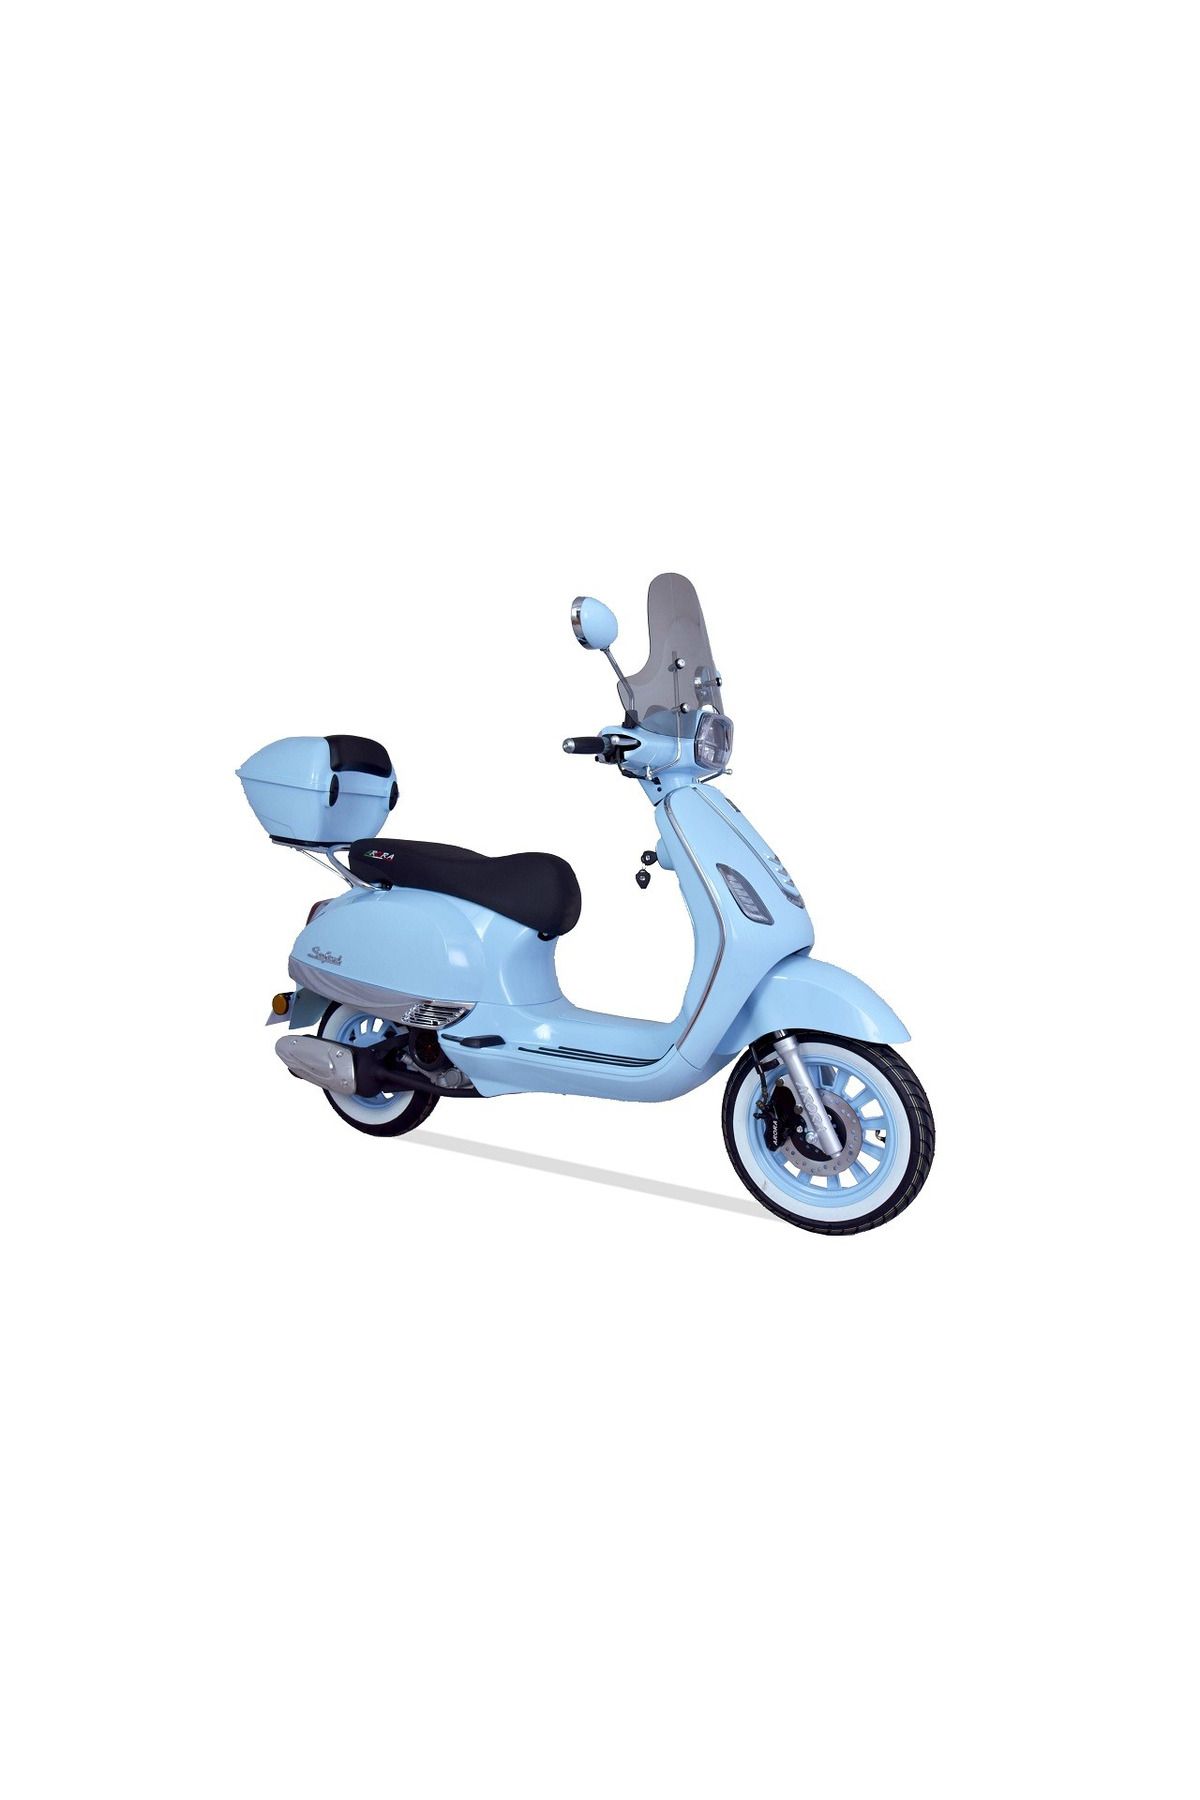 Arora Safari 50 Scooter Motorsiklet - 2023 model